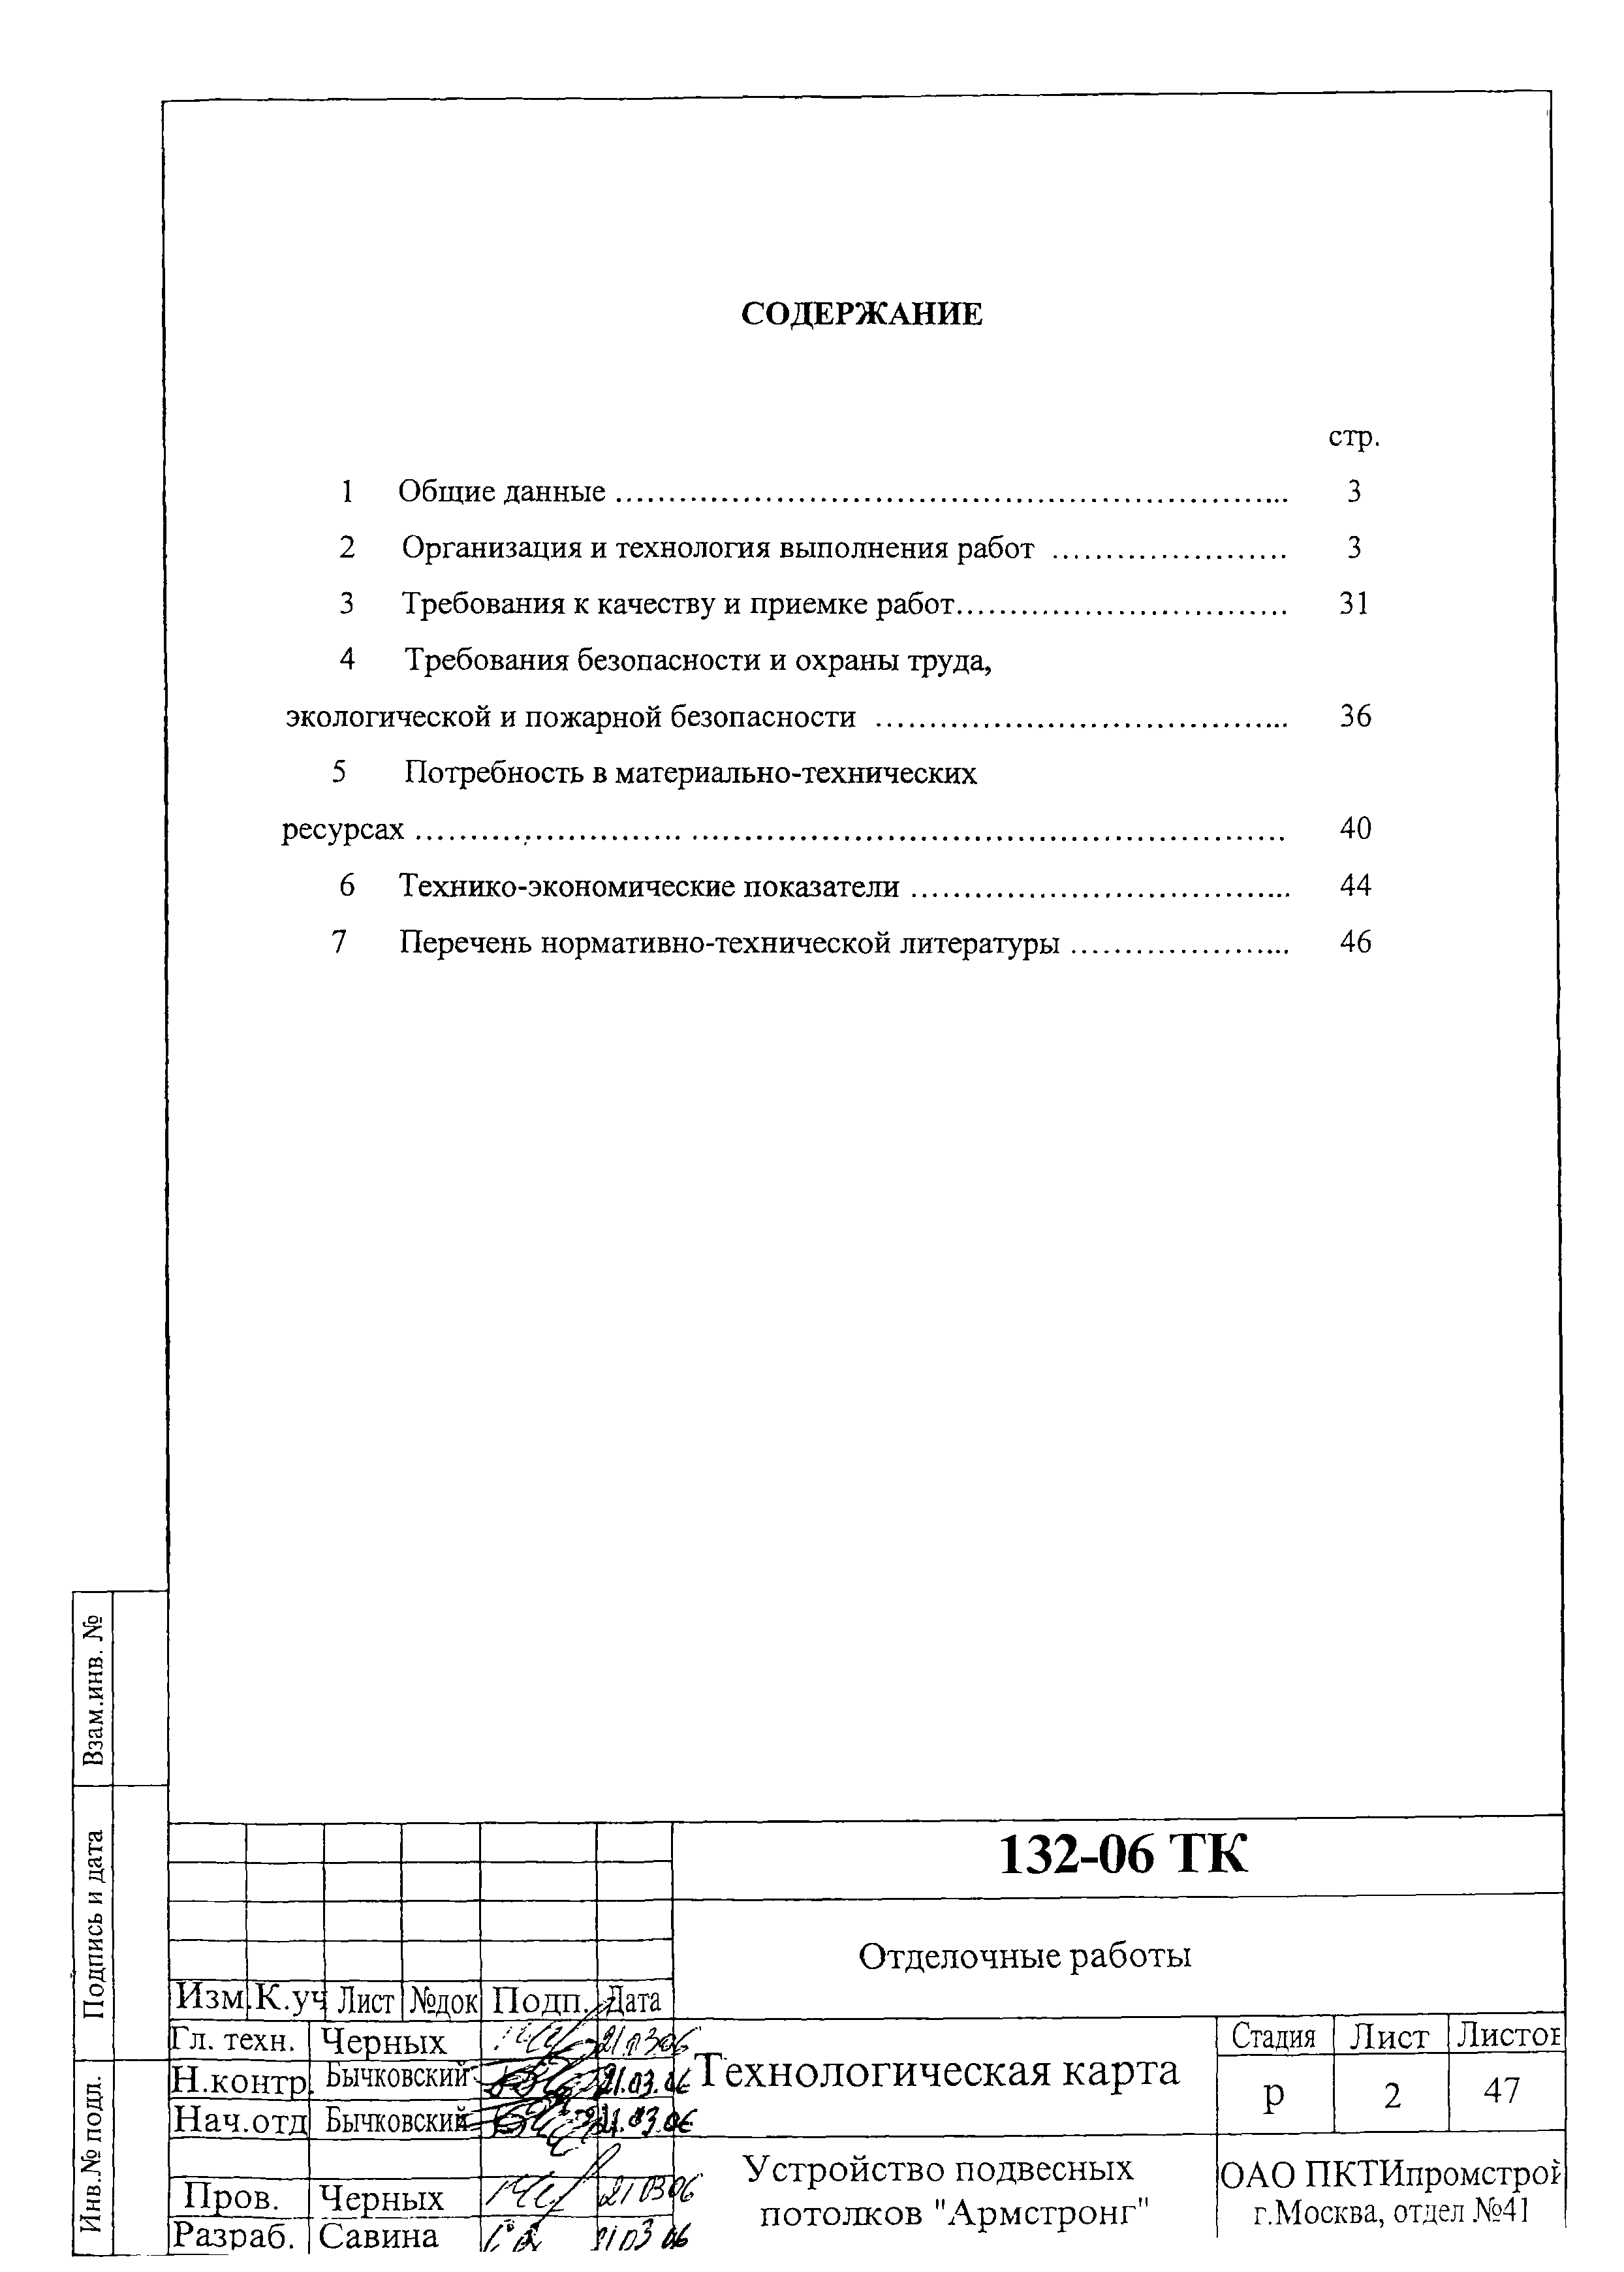 Технологическая карта 132-06 ТК